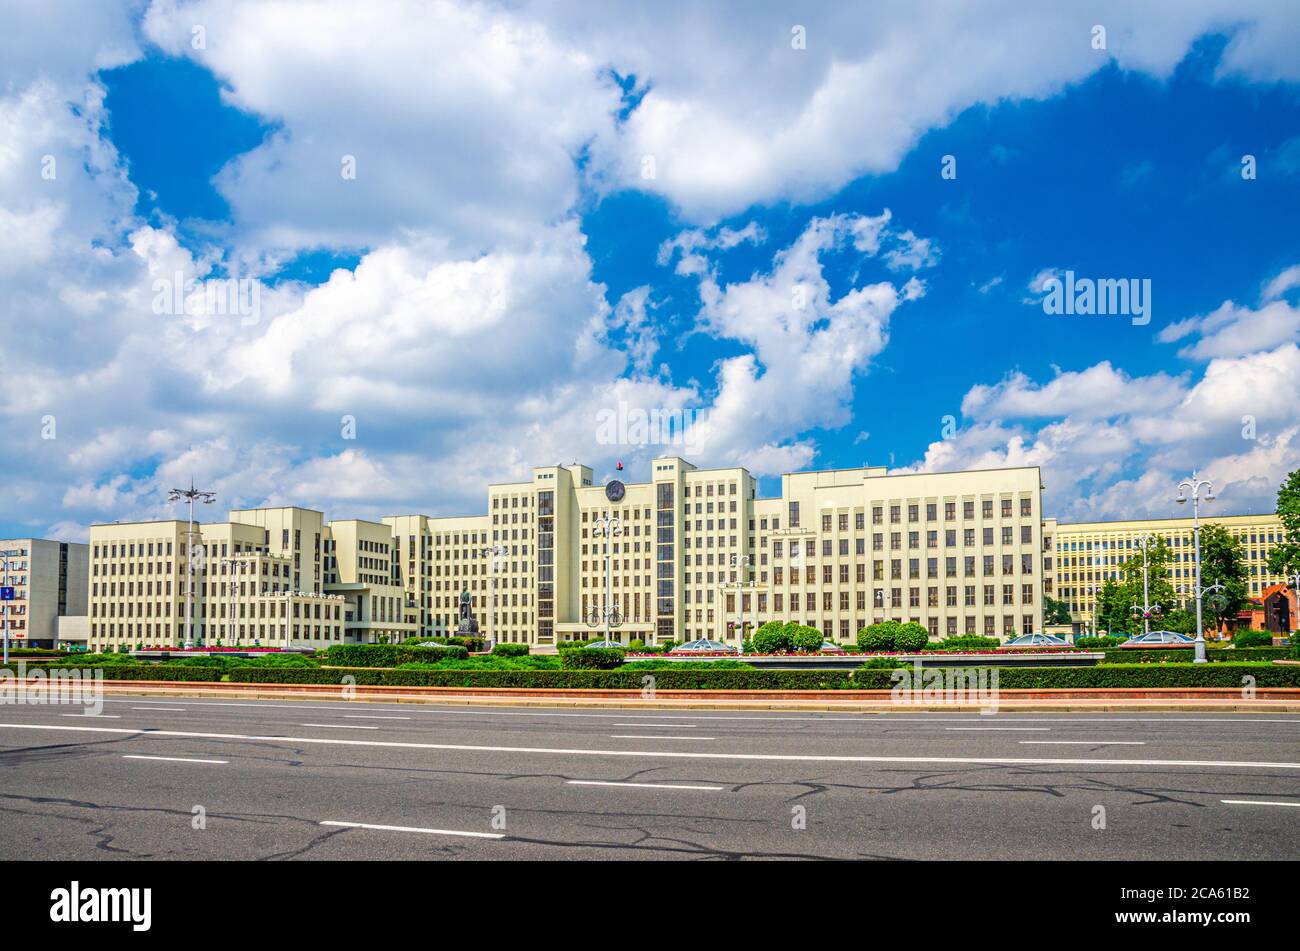 L'edificio in stile costruttivismo della Casa del Governo e la statua di Vladimir Lenin sulla Piazza dell'Indipendenza nel centro storico della città di Minsk, le nuvole bianche del cielo blu nella soleggiata giornata estiva, Repubblica di Bielorussia Foto Stock